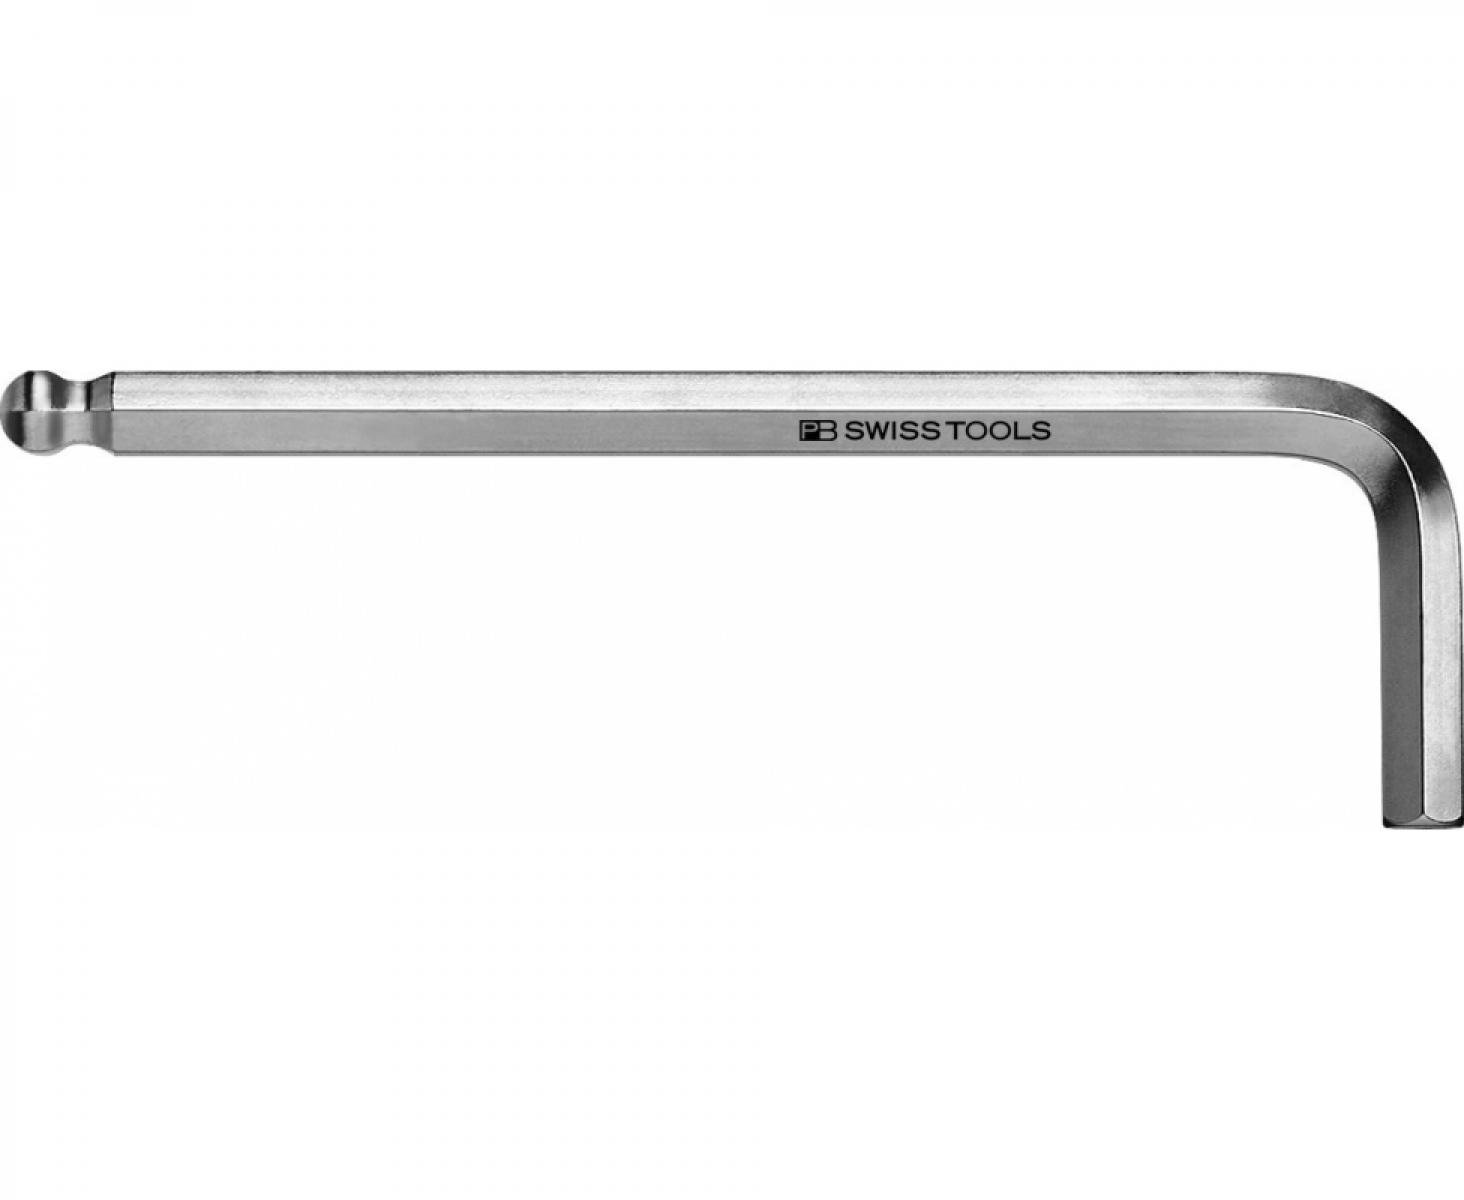 Ключ штифтовый HEX PB Swiss Tools PB 212Z.7/64 со сферической головкой дюймовый